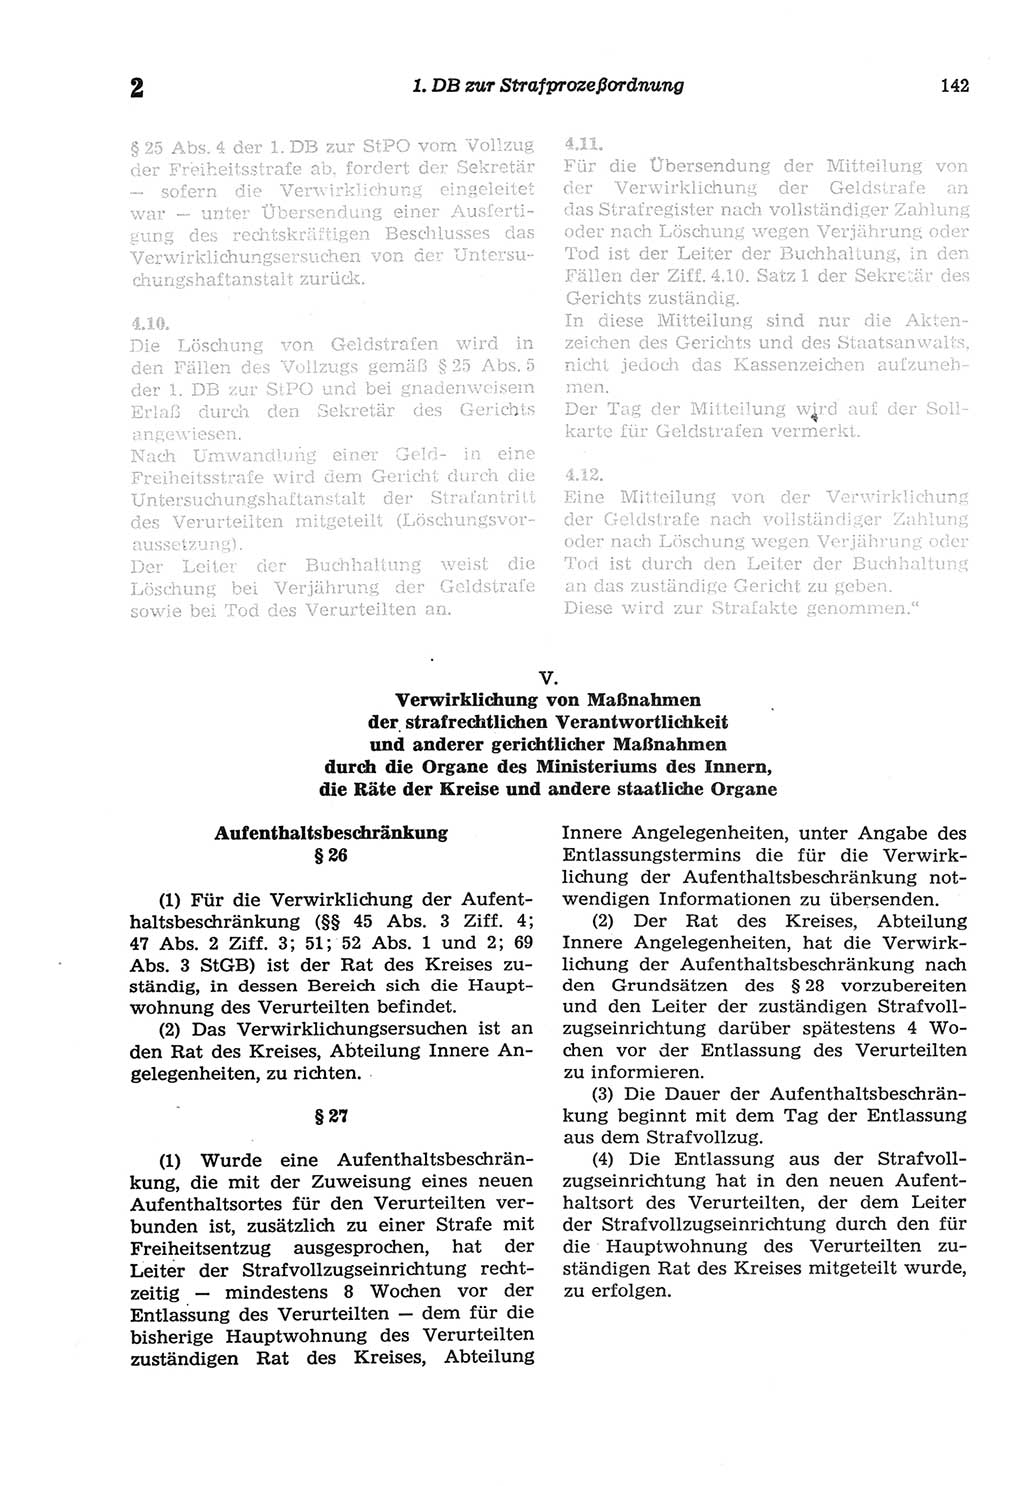 Strafprozeßordnung (StPO) der Deutschen Demokratischen Republik (DDR) sowie angrenzende Gesetze und Bestimmungen 1977, Seite 142 (StPO DDR Ges. Best. 1977, S. 142)